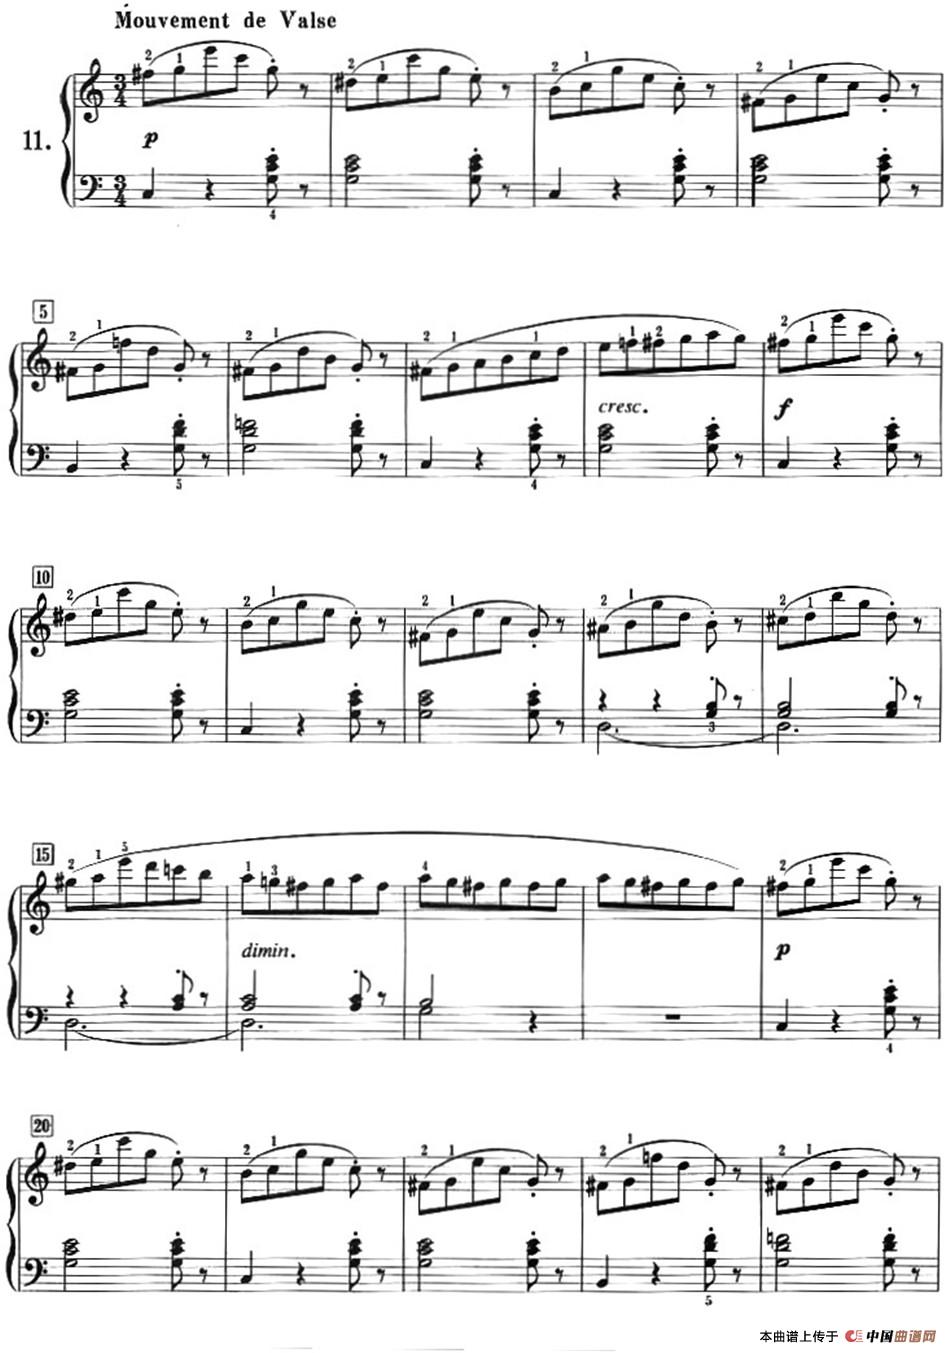 50首莱蒙钢琴练习曲 作品37（NO.11）(1)_Lemoine_页面_12.jpg